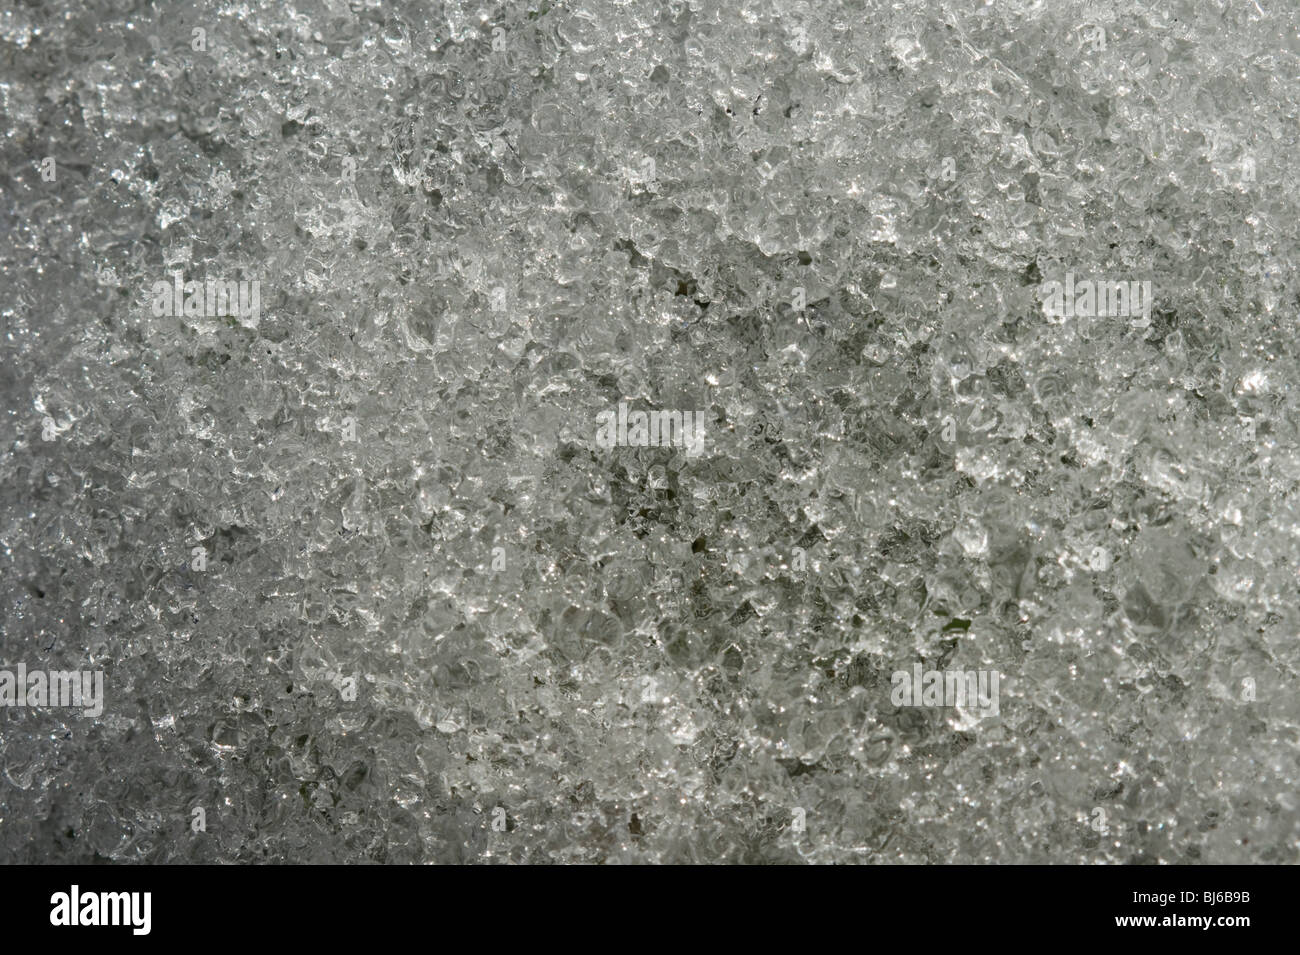 Les cristaux de glace de neige fraîche après quelques jours allongé sur l'herbe - la structure de la neige devient glace granulé Banque D'Images